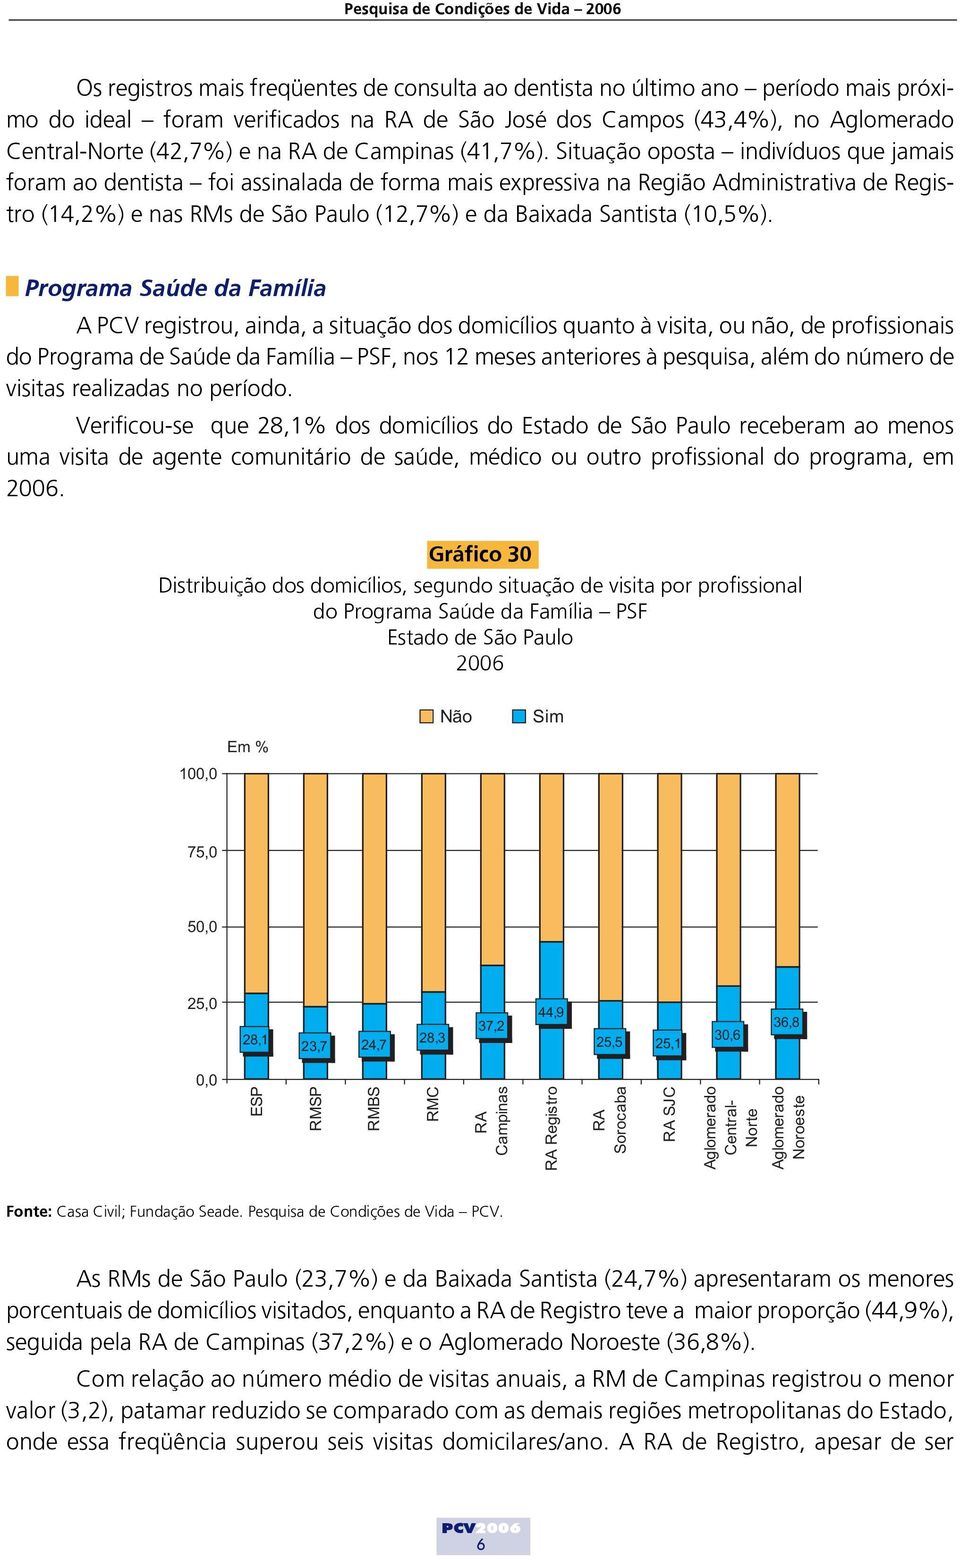 Situação oposta indivíduos que jamais foram ao dentista foi assinalada de forma mais expressiva na Região Administrativa de Registro (14,2%) e nas RMs de São Paulo (12,7%) e da Baixada Santista